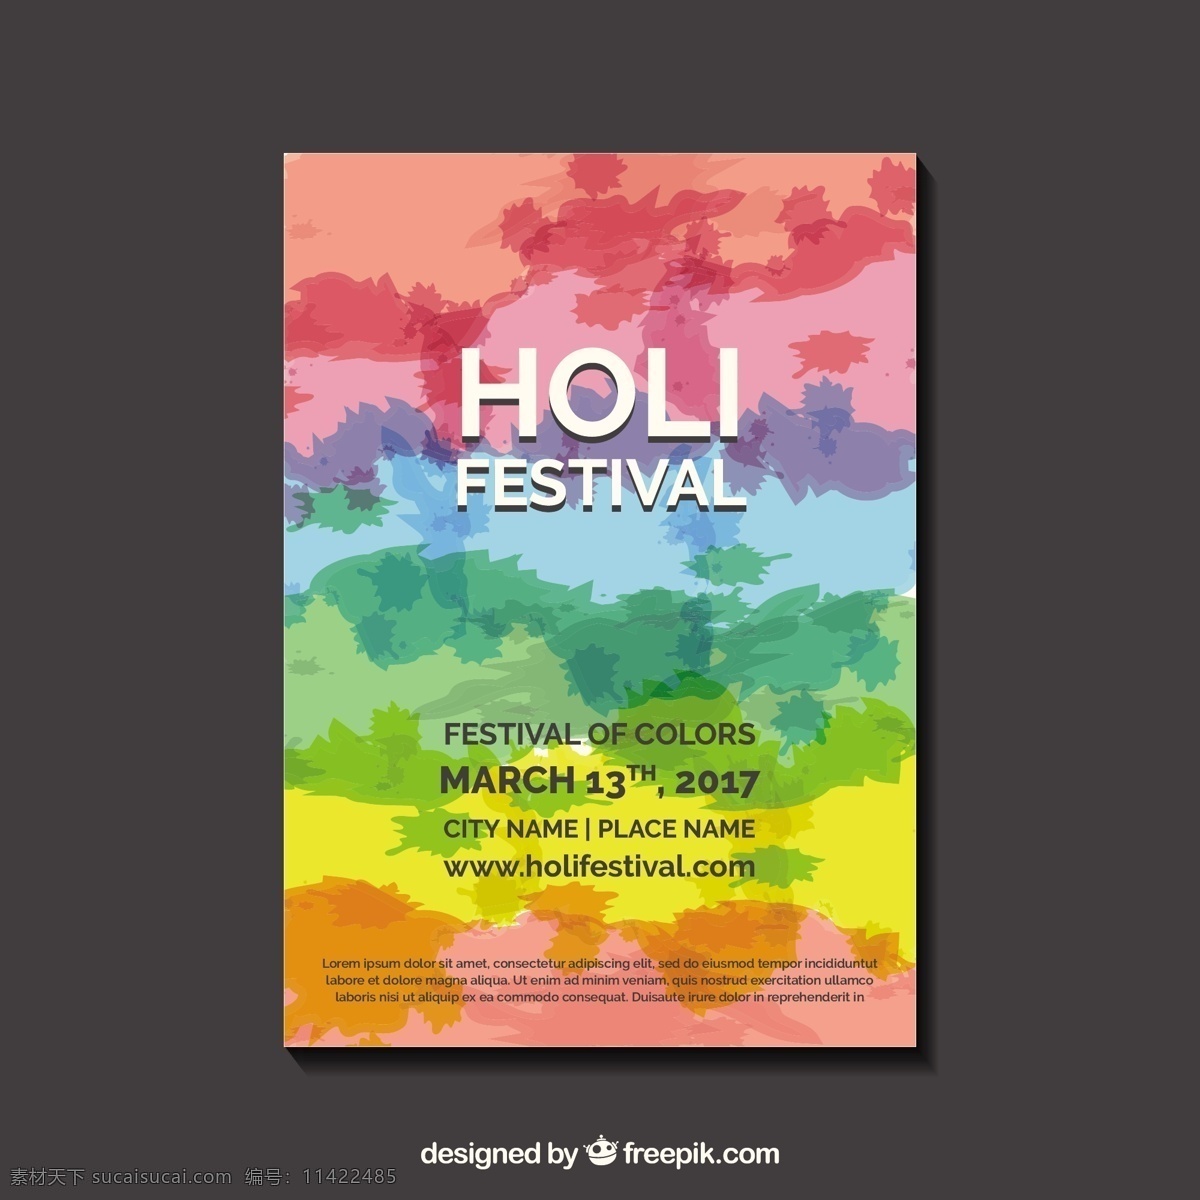 胡里 节 色彩 海报 模板 小册子 传单 派对 爱情 宣传册模板 颜料 派对海报 春天 庆祝 快乐 多彩 节日 印度 传单模板 装饰